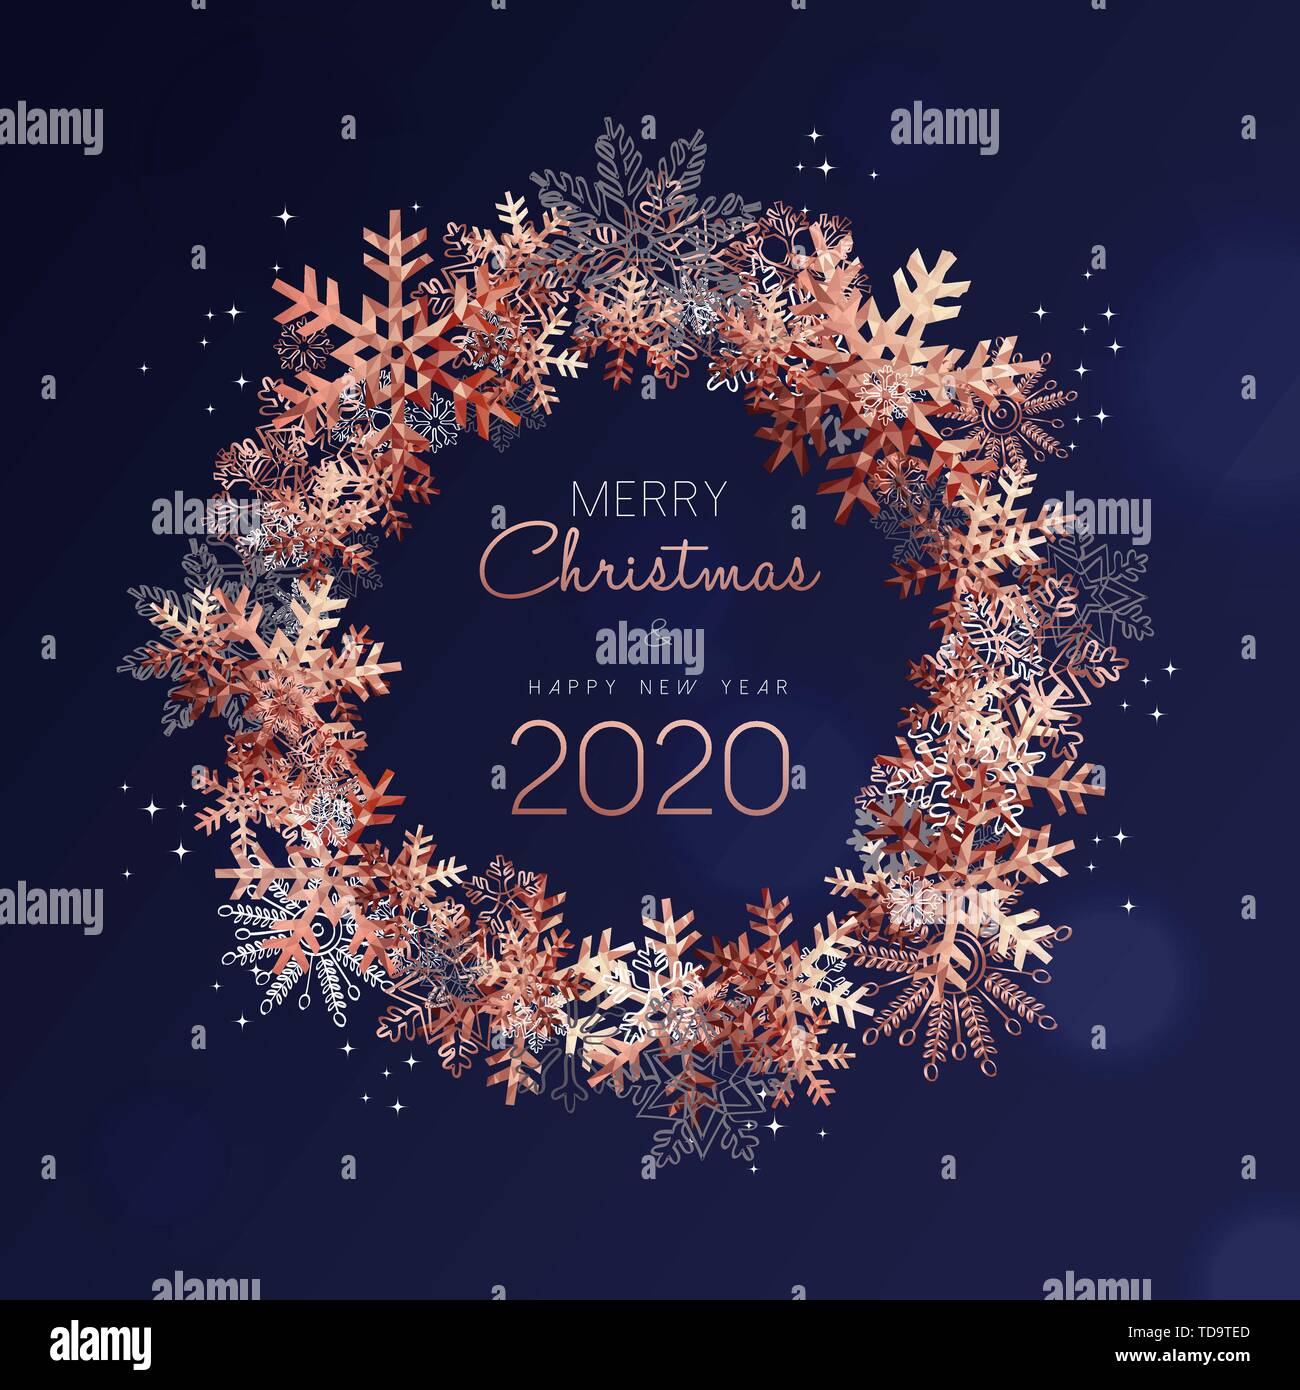 Frohe Weihnachten und ein glückliches Neues Jahr 2020 Grußkarten-Design mit Kupfer Schneeflocken im Winter Saison. Stock Vektor